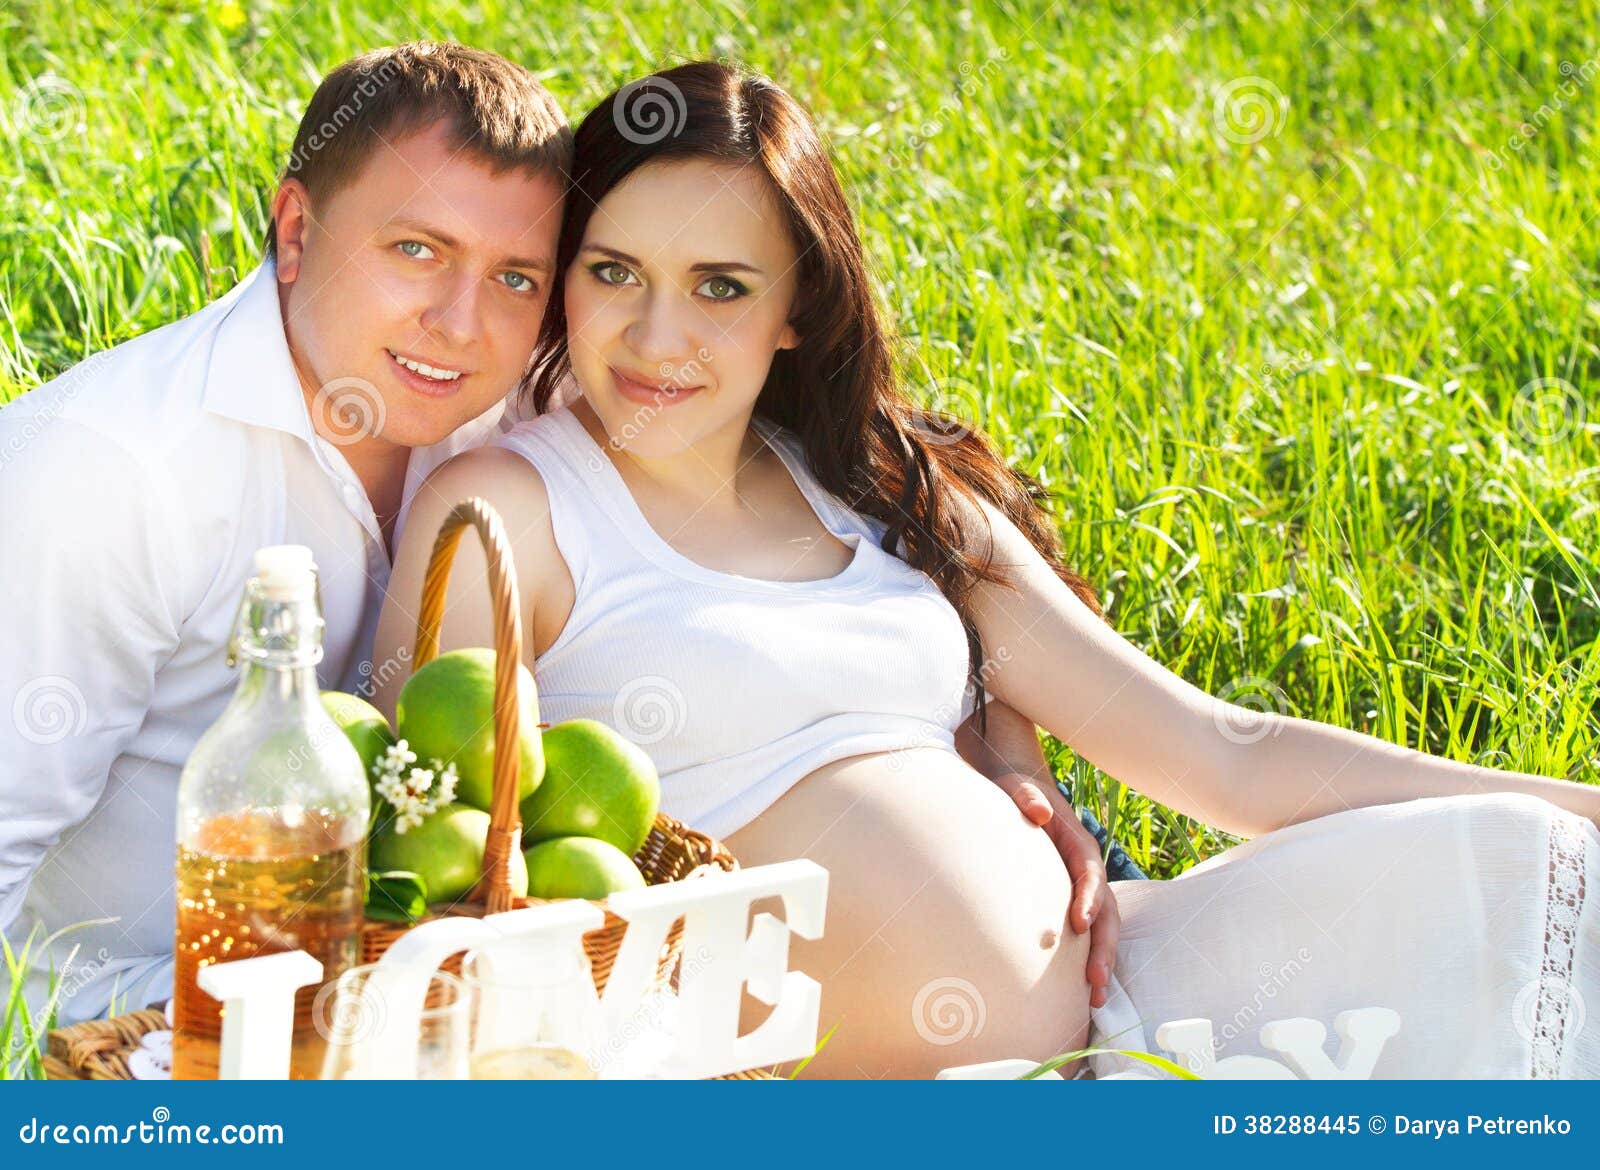 Пикник с мужем. Фотосессия беременной с мужем пикник. Фотосессия беременности пикник. Фотосессия беременной на пикнике летом.